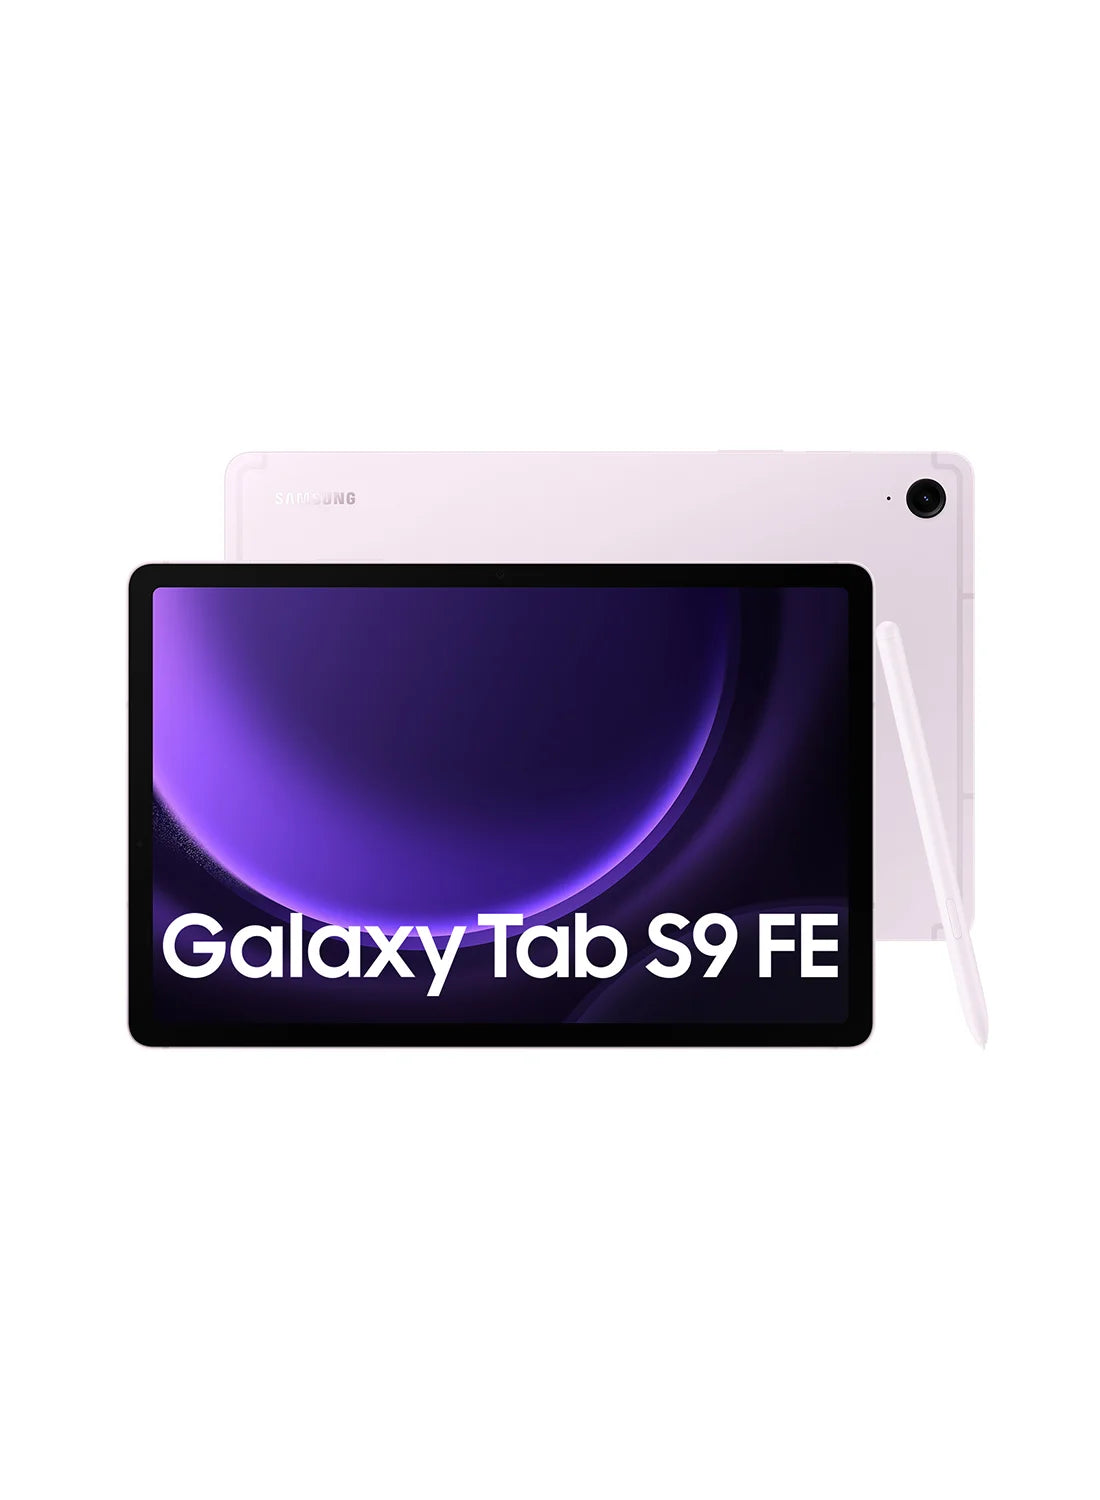 Samsung Galaxy Tab S9 FE - UAE Version (TDRA) - Miles Telecom Trading LLC